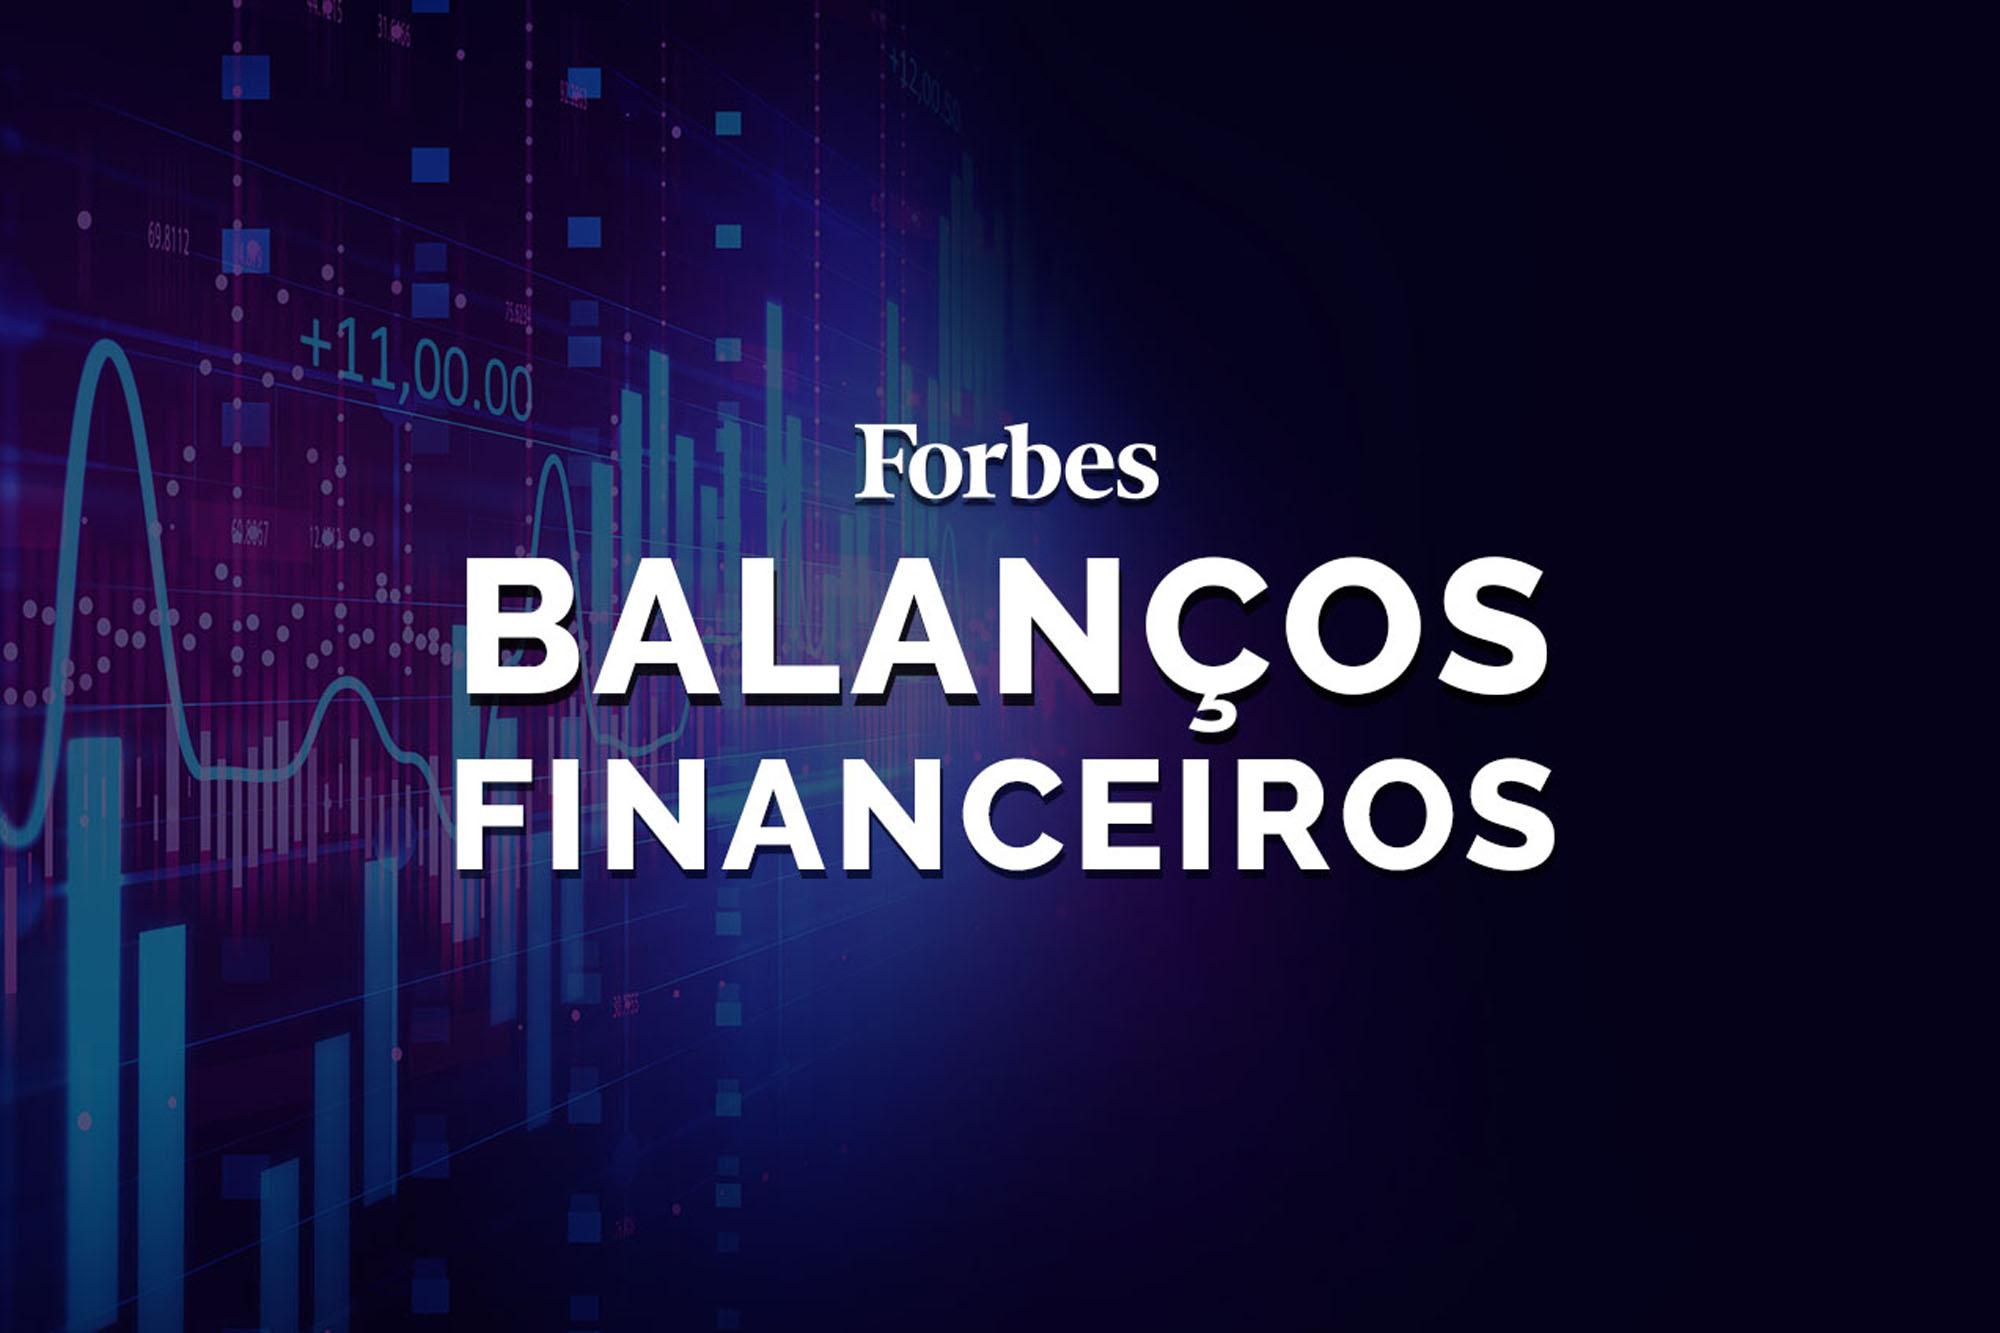 ForbesBalançoFinanceiro